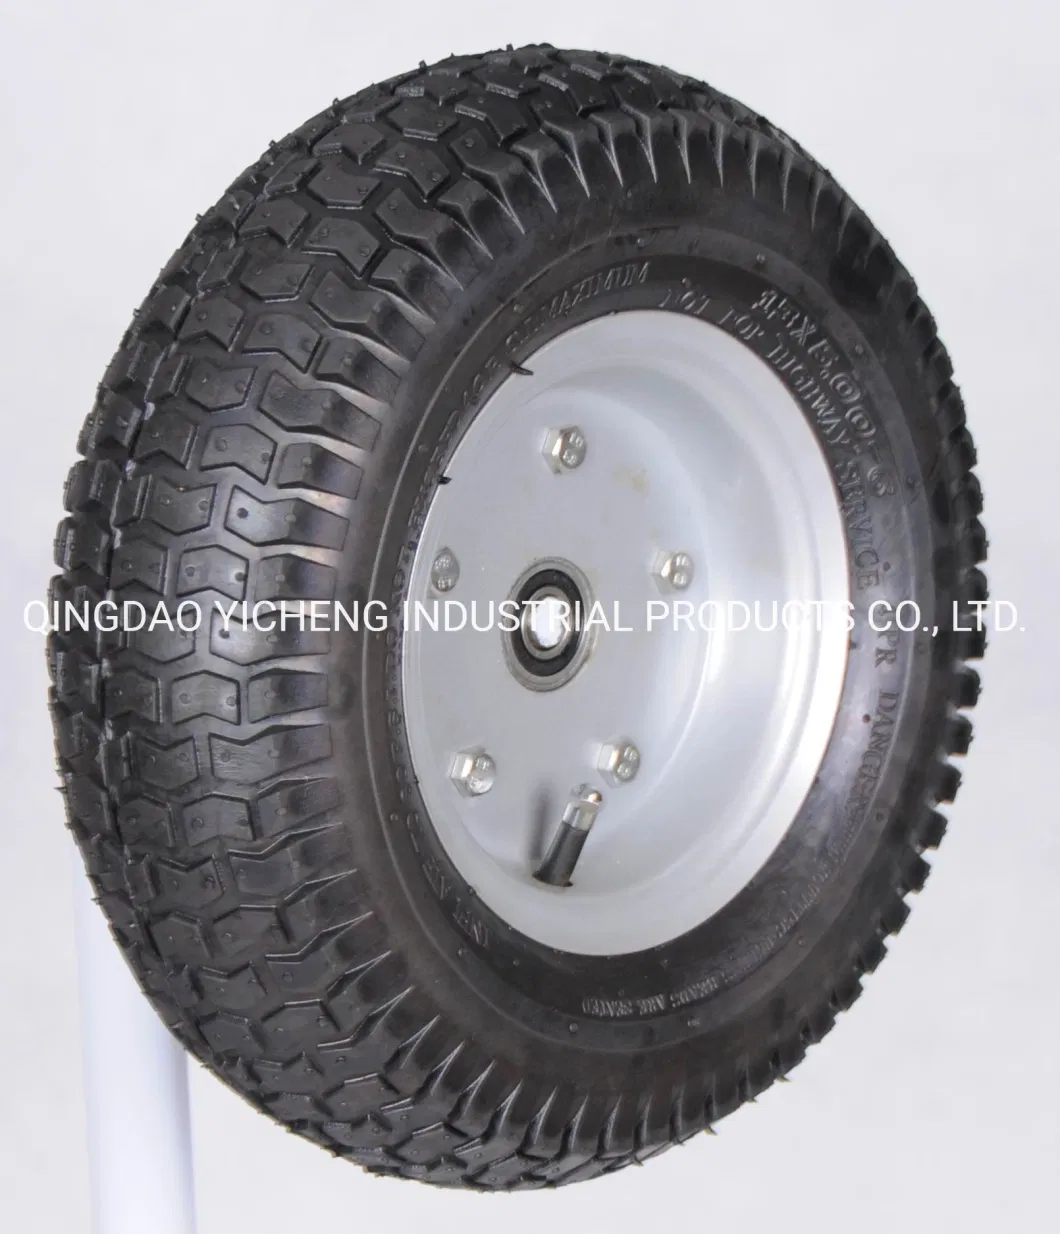 High Rubber Content Wheelbarow Wheel and Pneumatic Wheel 4.80-8 for Wheelbarrow